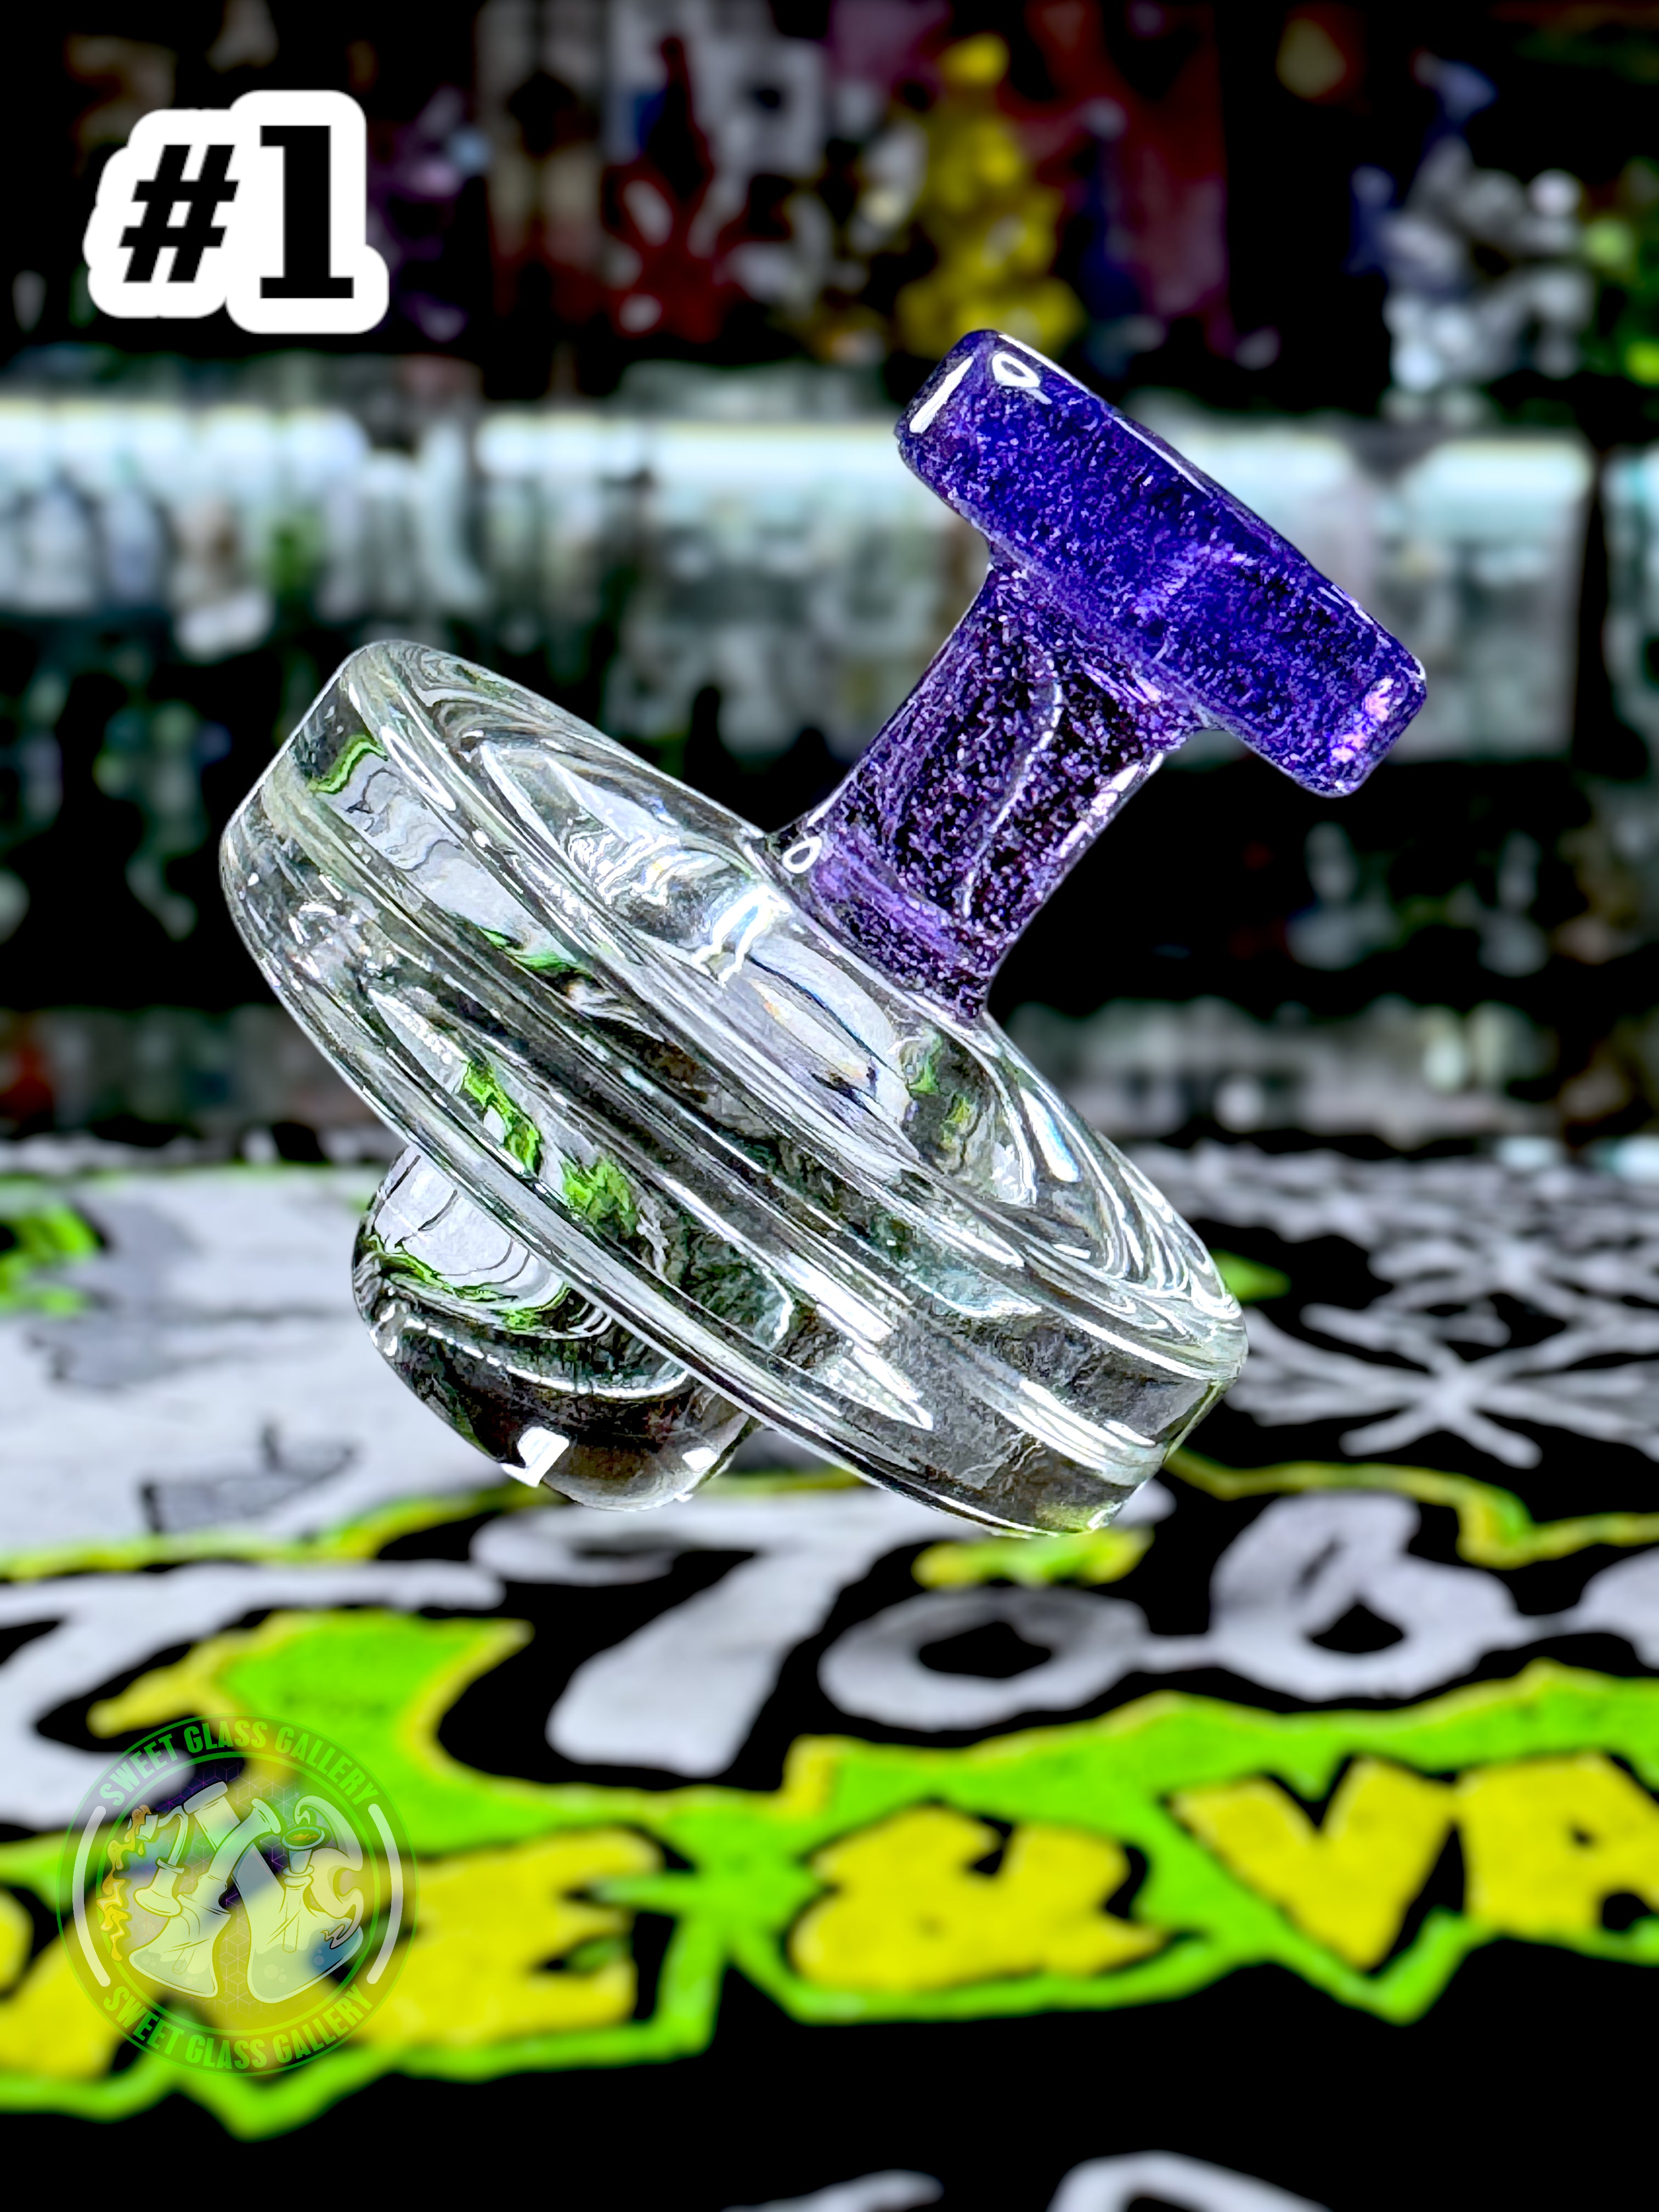 Jong Glass - Slurper Flat Cap (Fits 20mm Slurpers) #1 Purple Lollipop